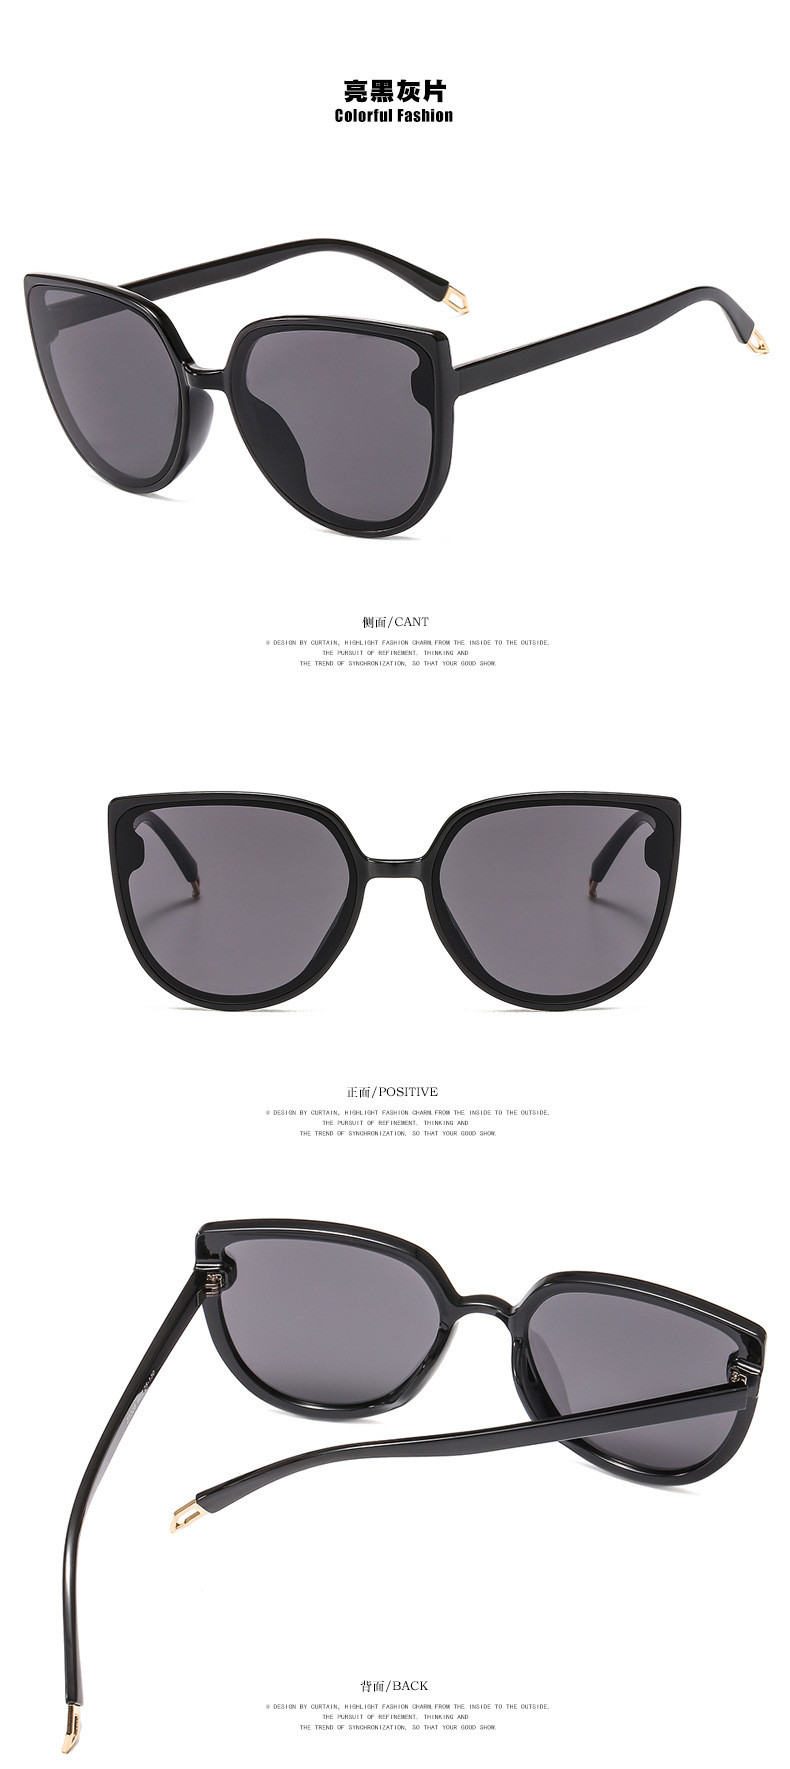 普琳丝 奶茶色猫眼太阳镜2020新款墨镜防紫外线眼镜潮流新款3328金属铰链